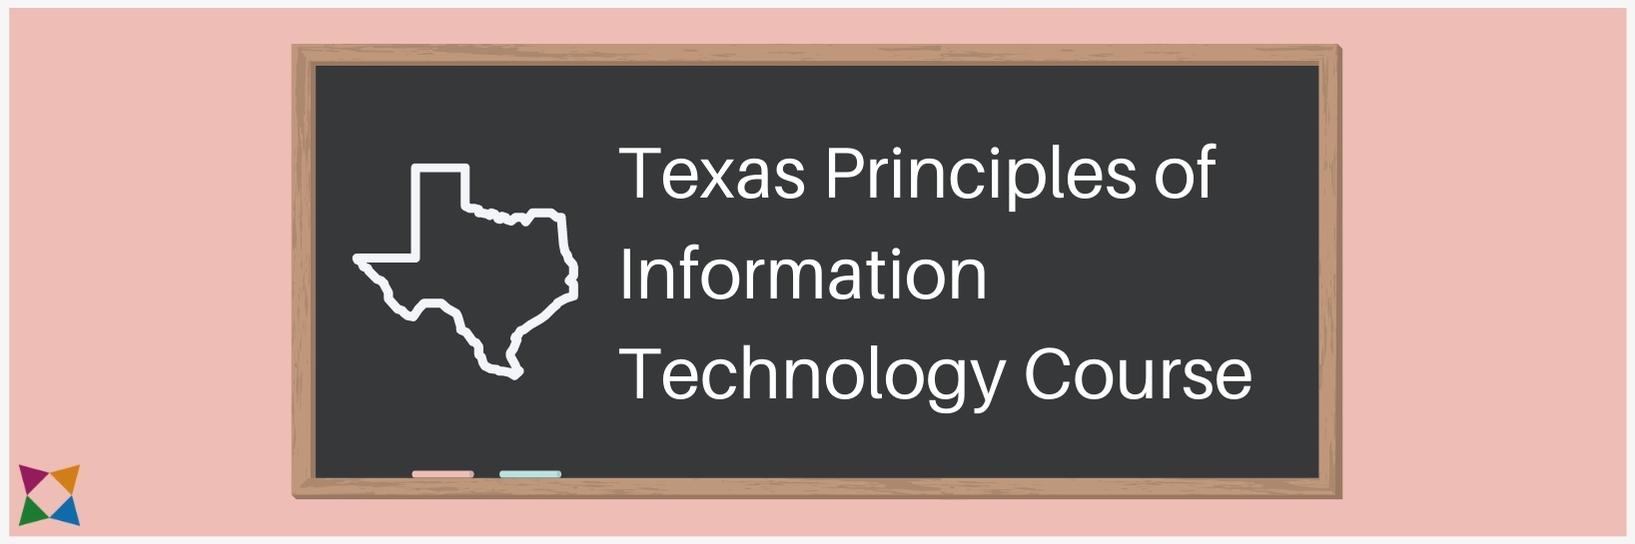 texas-principles-information-technology-course